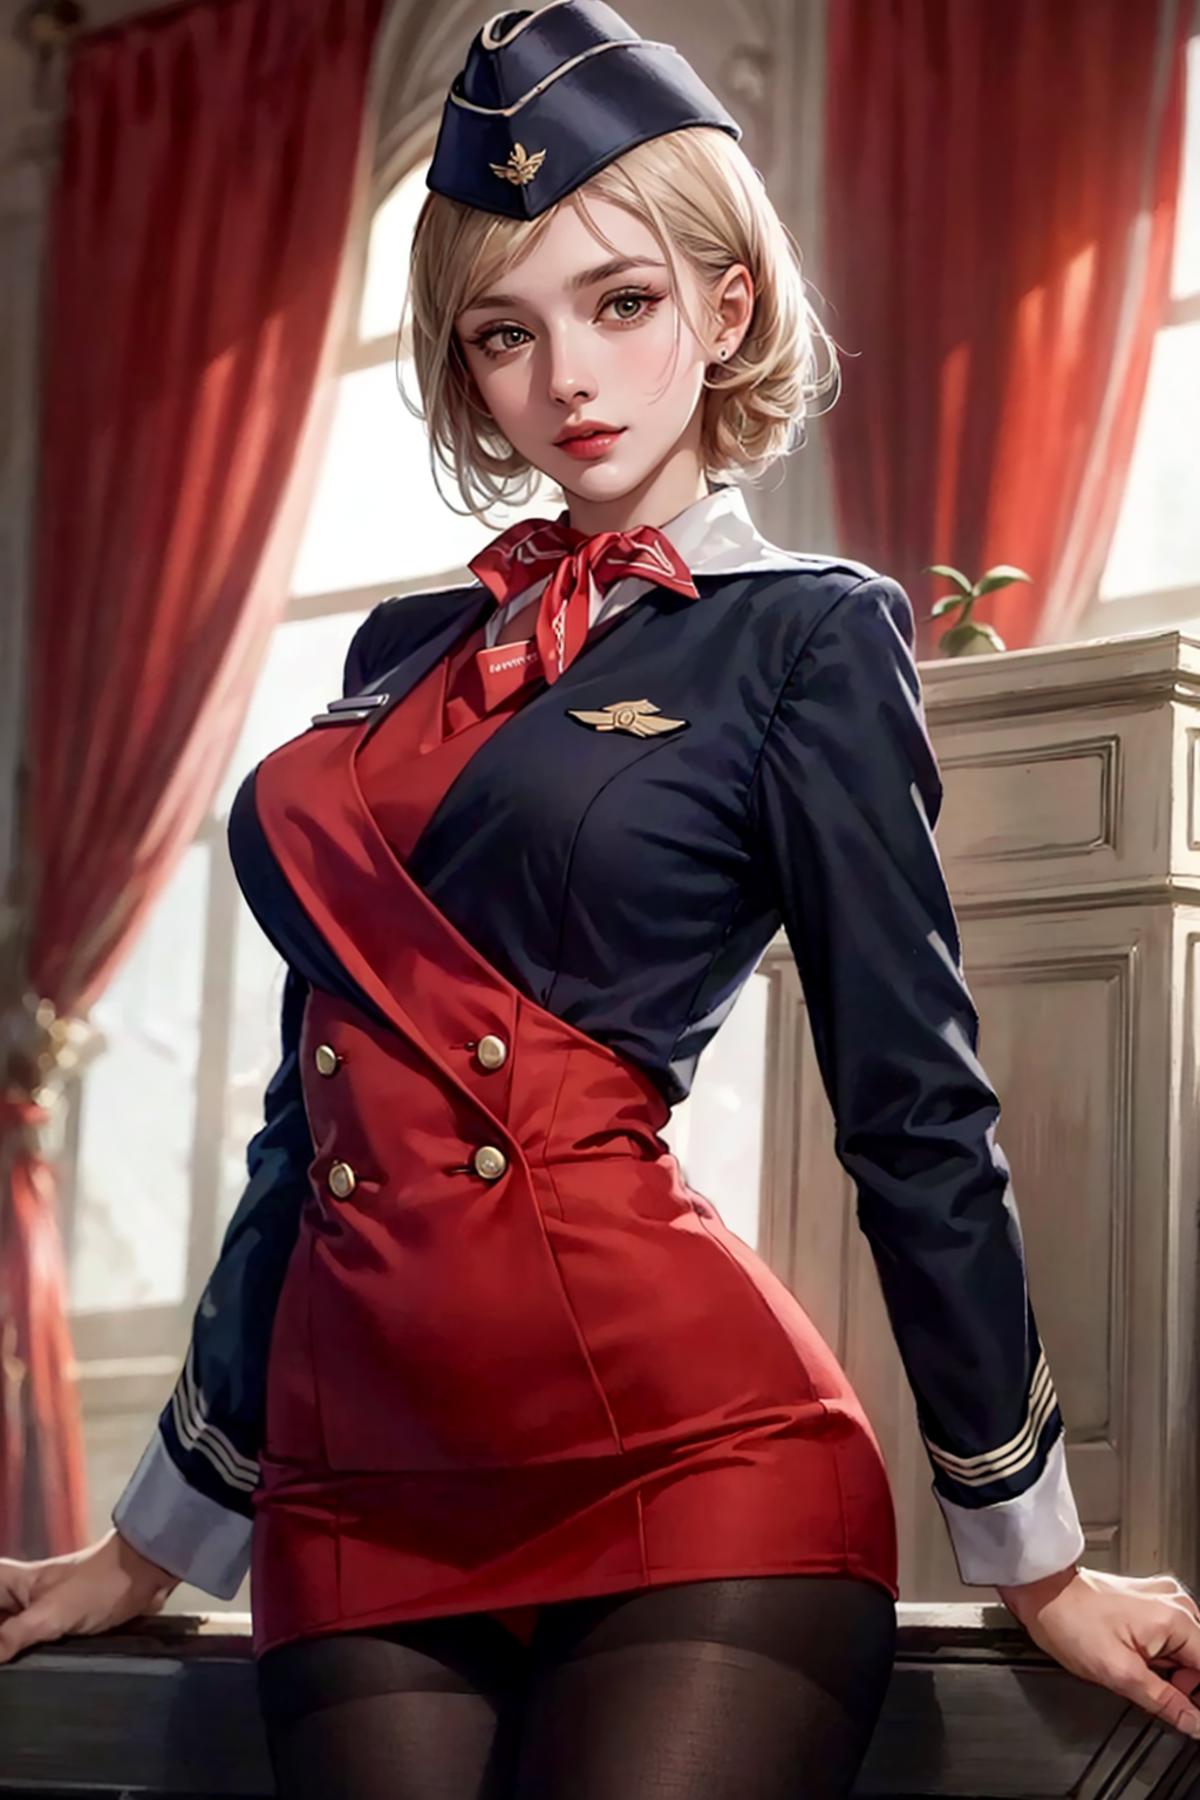 Russian Stewardess image by affa1988